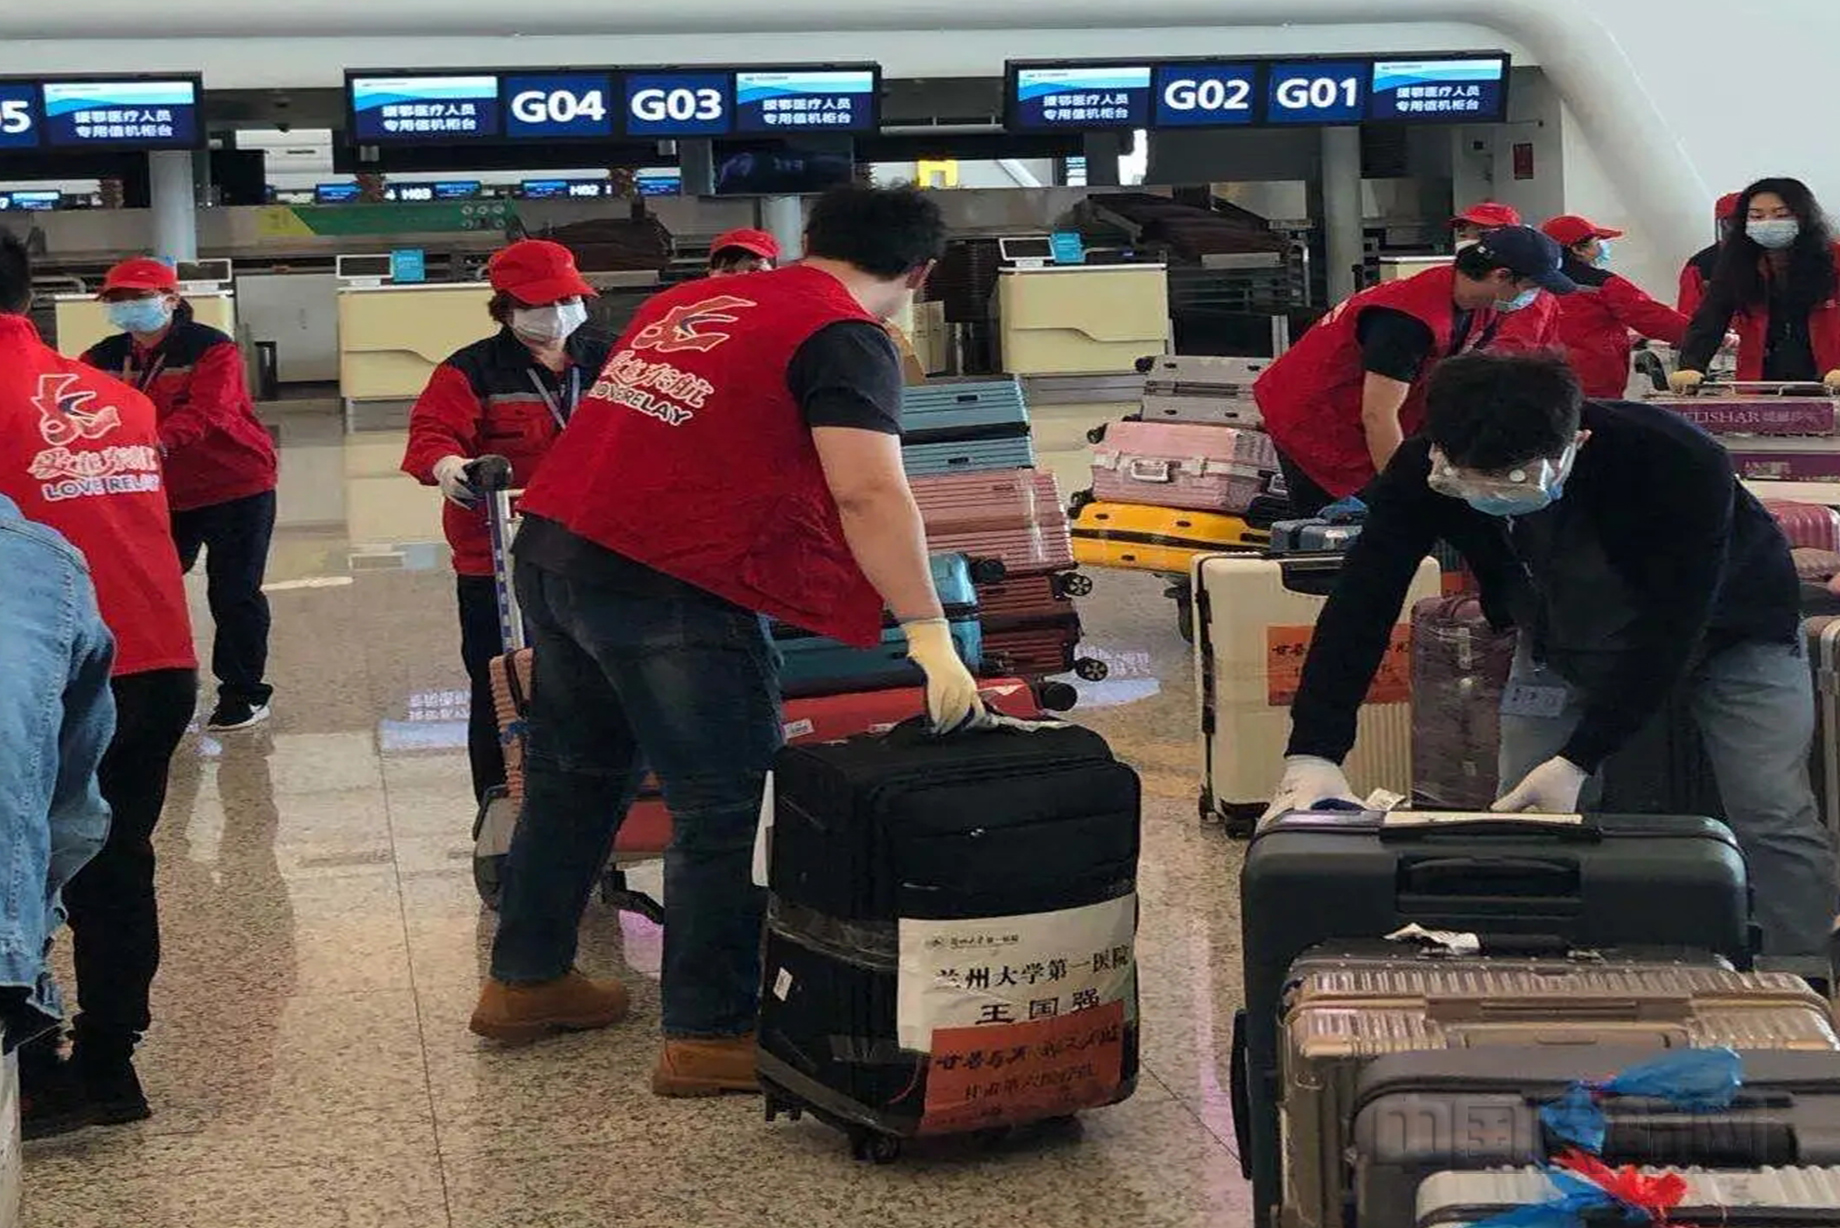 东航武汉公司的志愿者协助现场同事搬运行李物资-东航武汉供图1.jpg